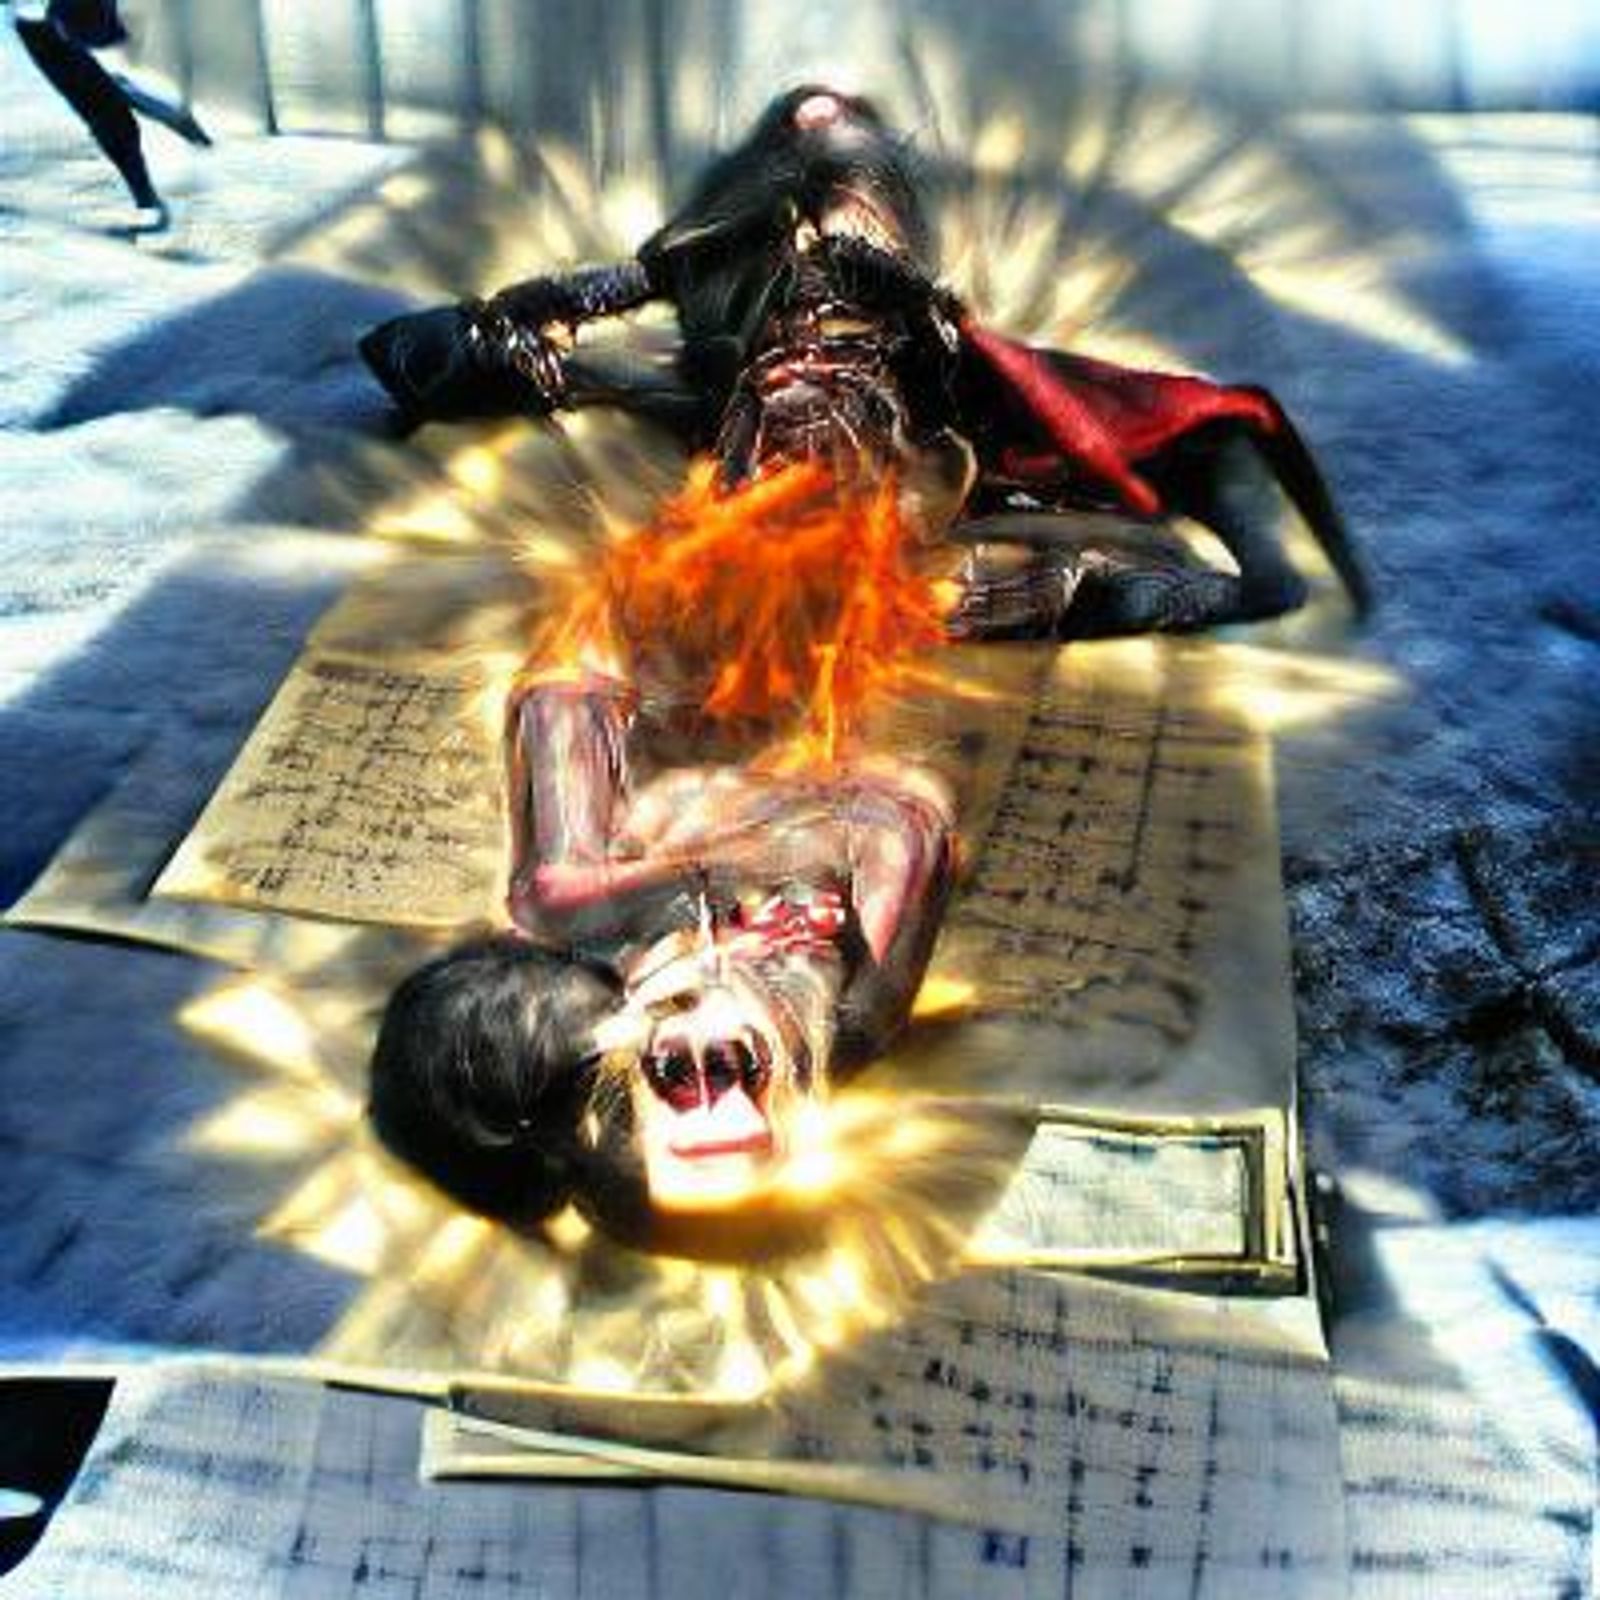 vampire in sunlight